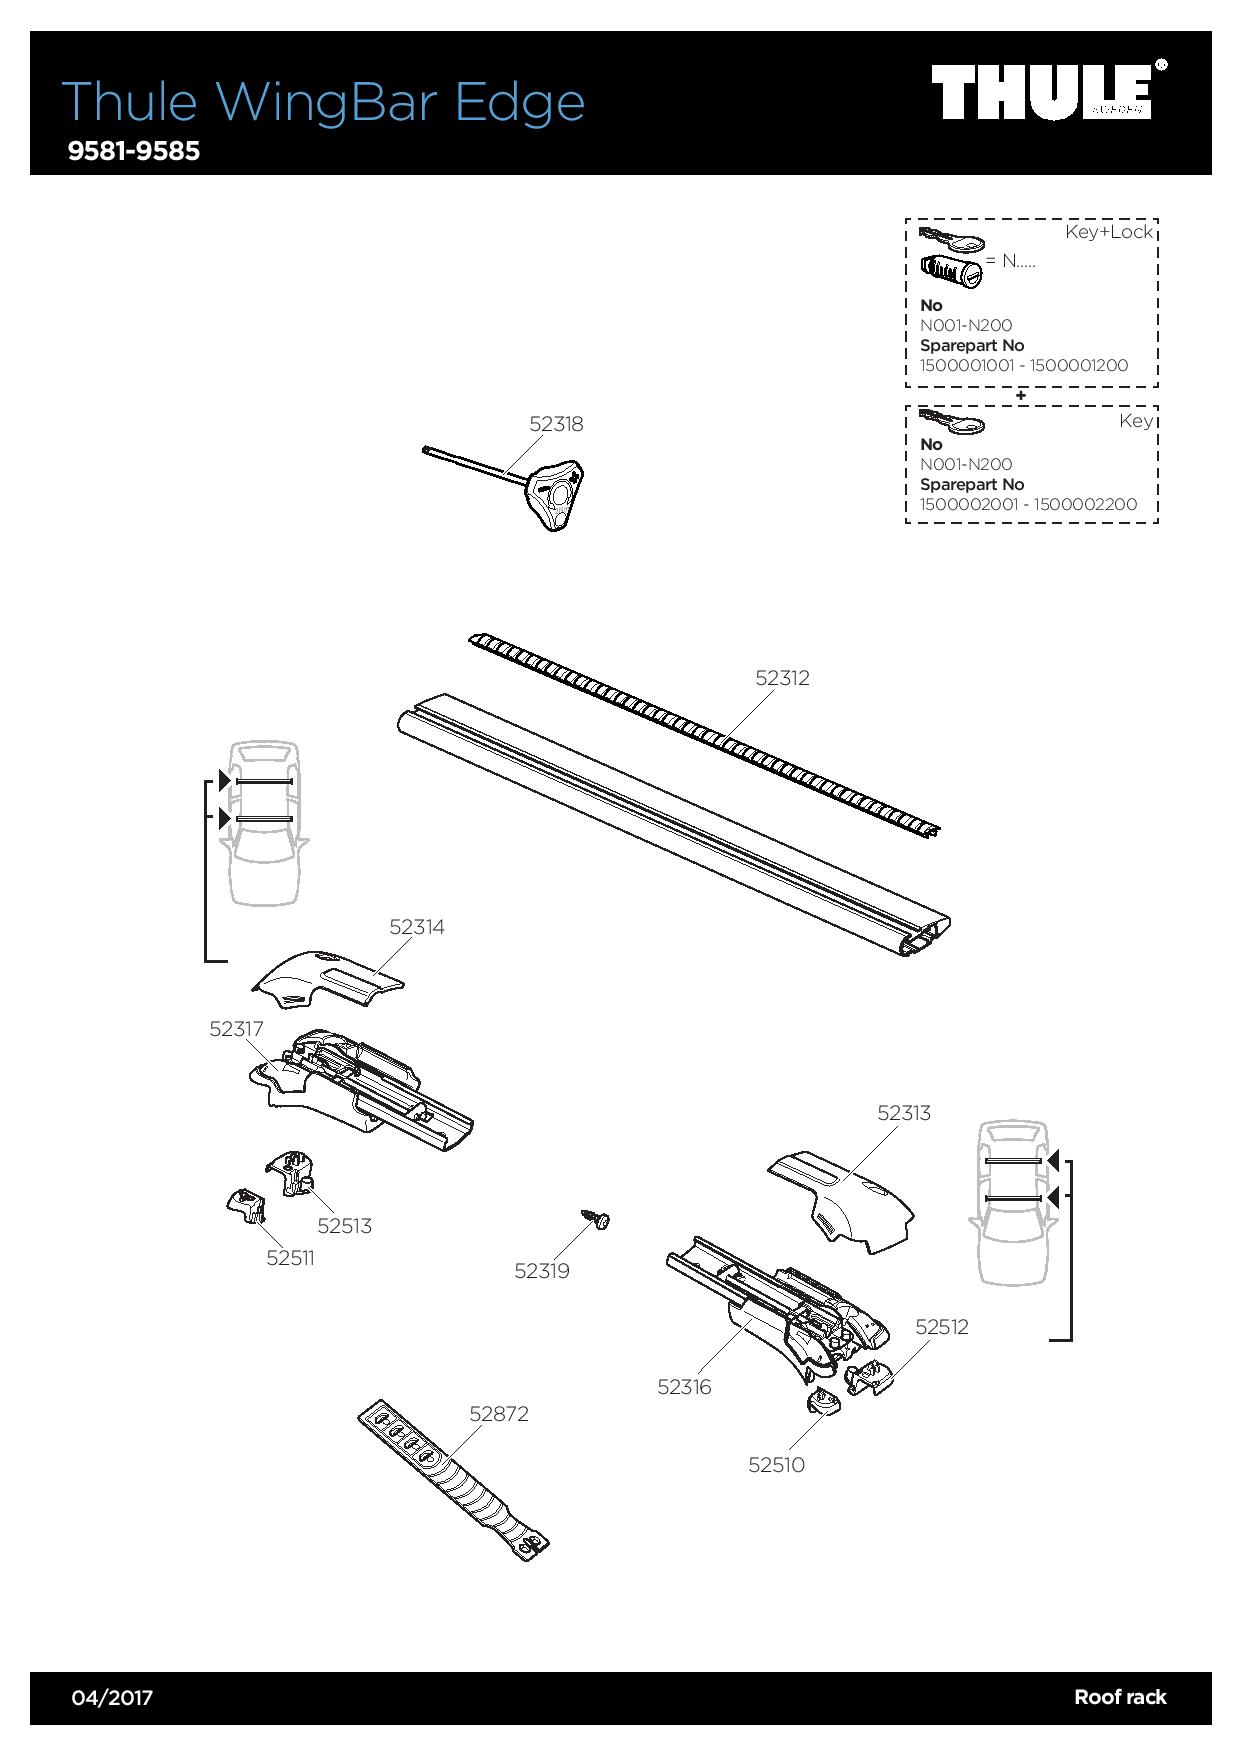 Galeries de toit Peugeot 308 Sw Stationwagon 2014 à 2021 - Barre d'aile -  avec sac de